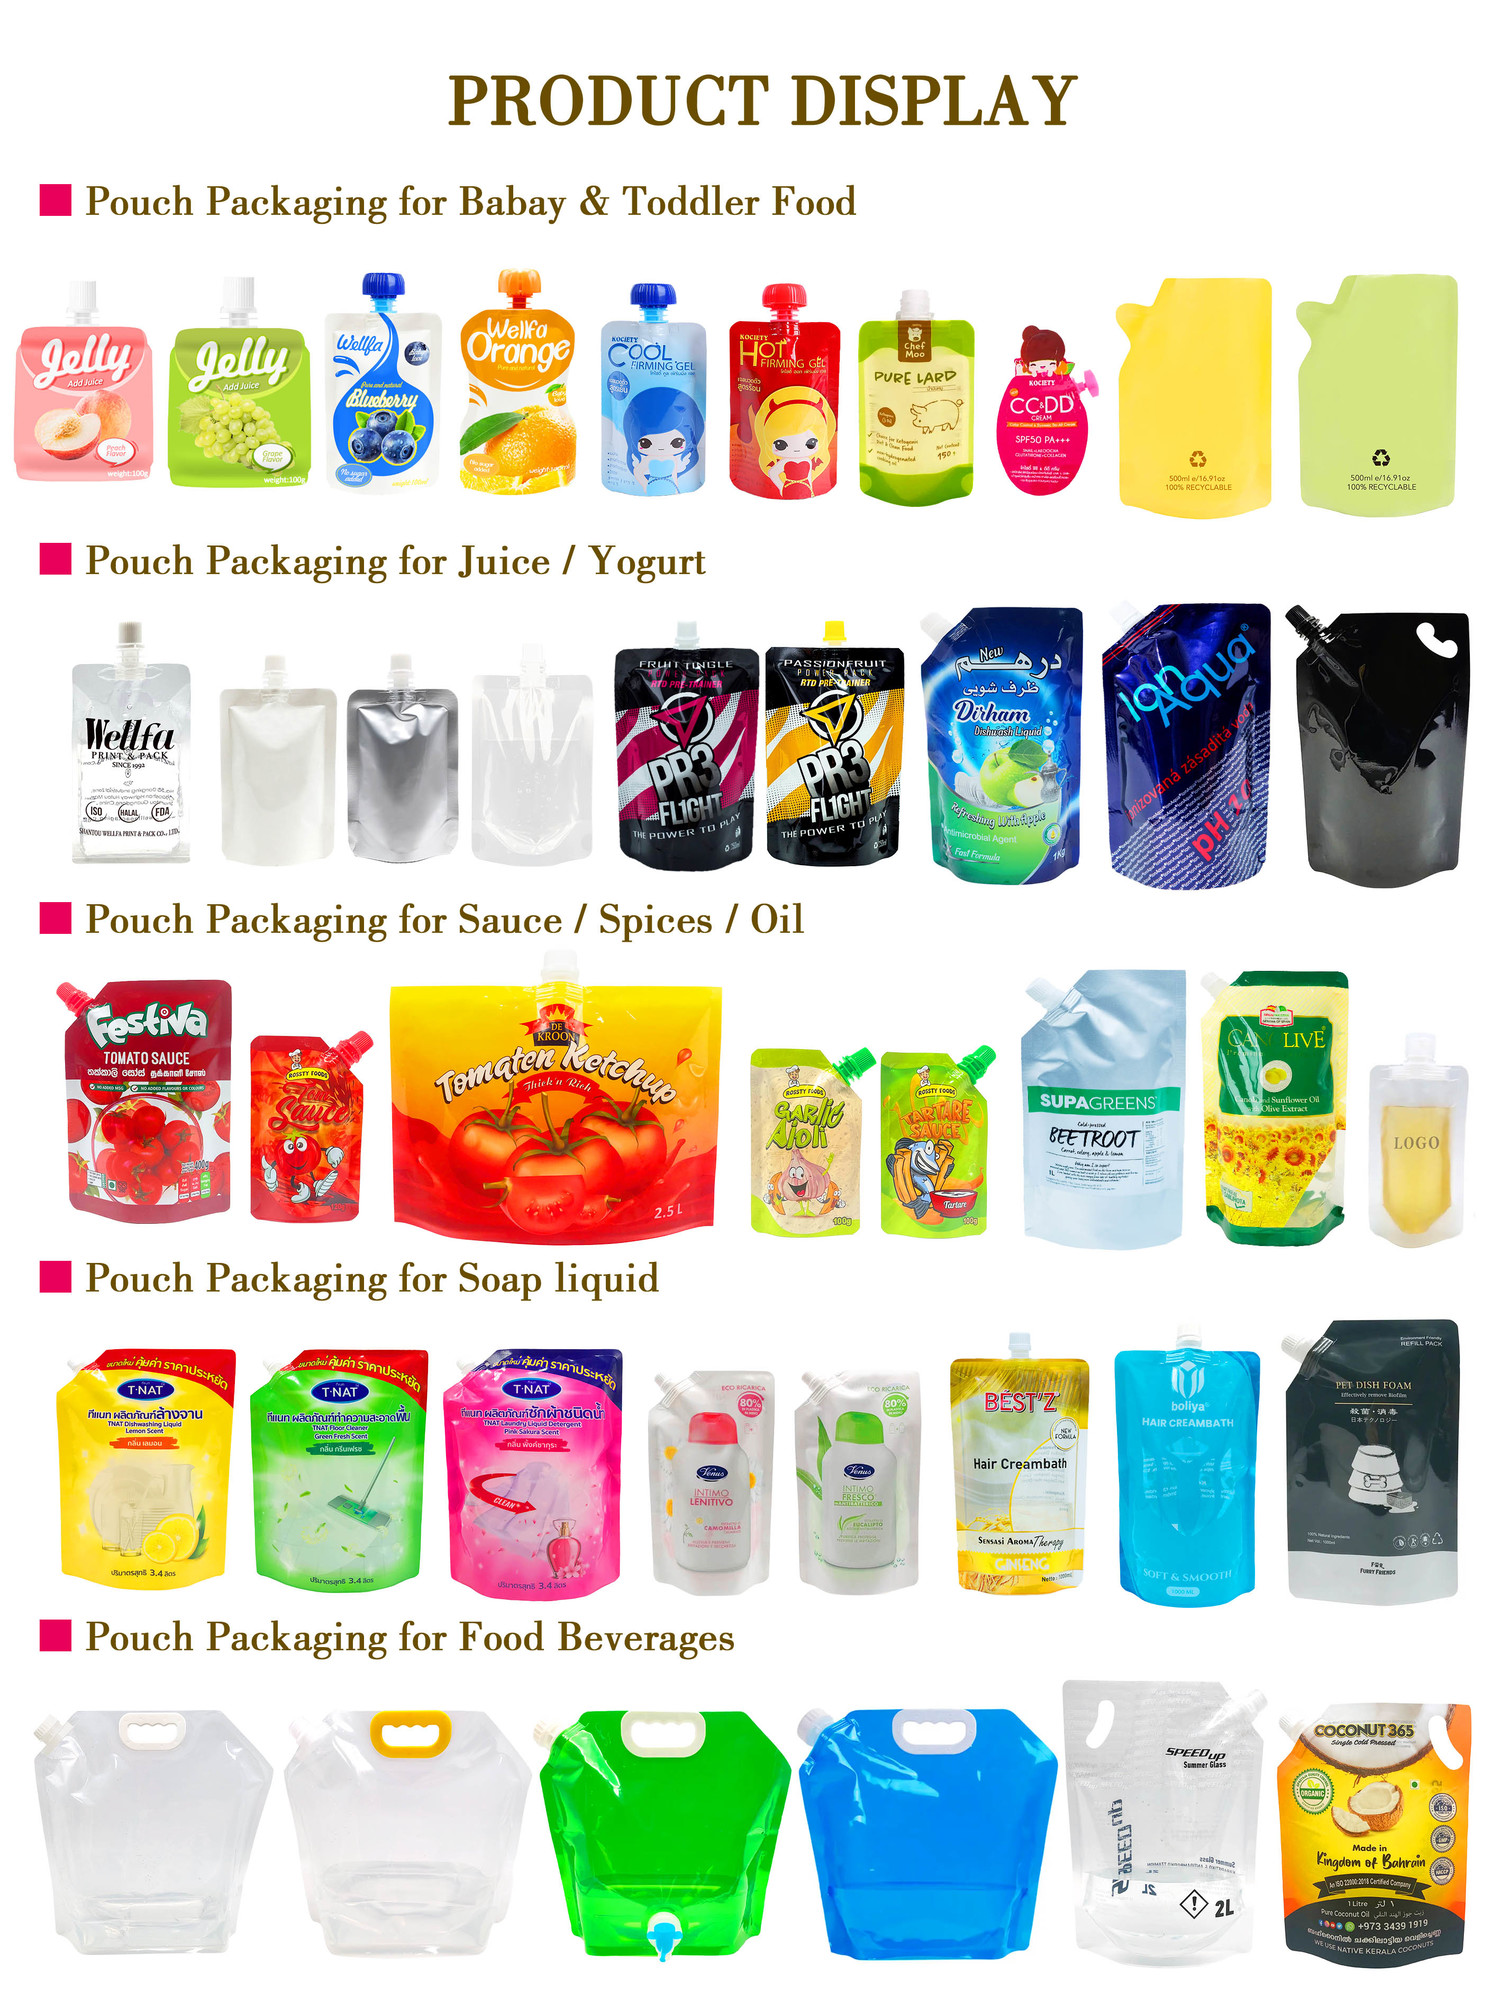 吸嘴袋产品展示1 juice spout pouch